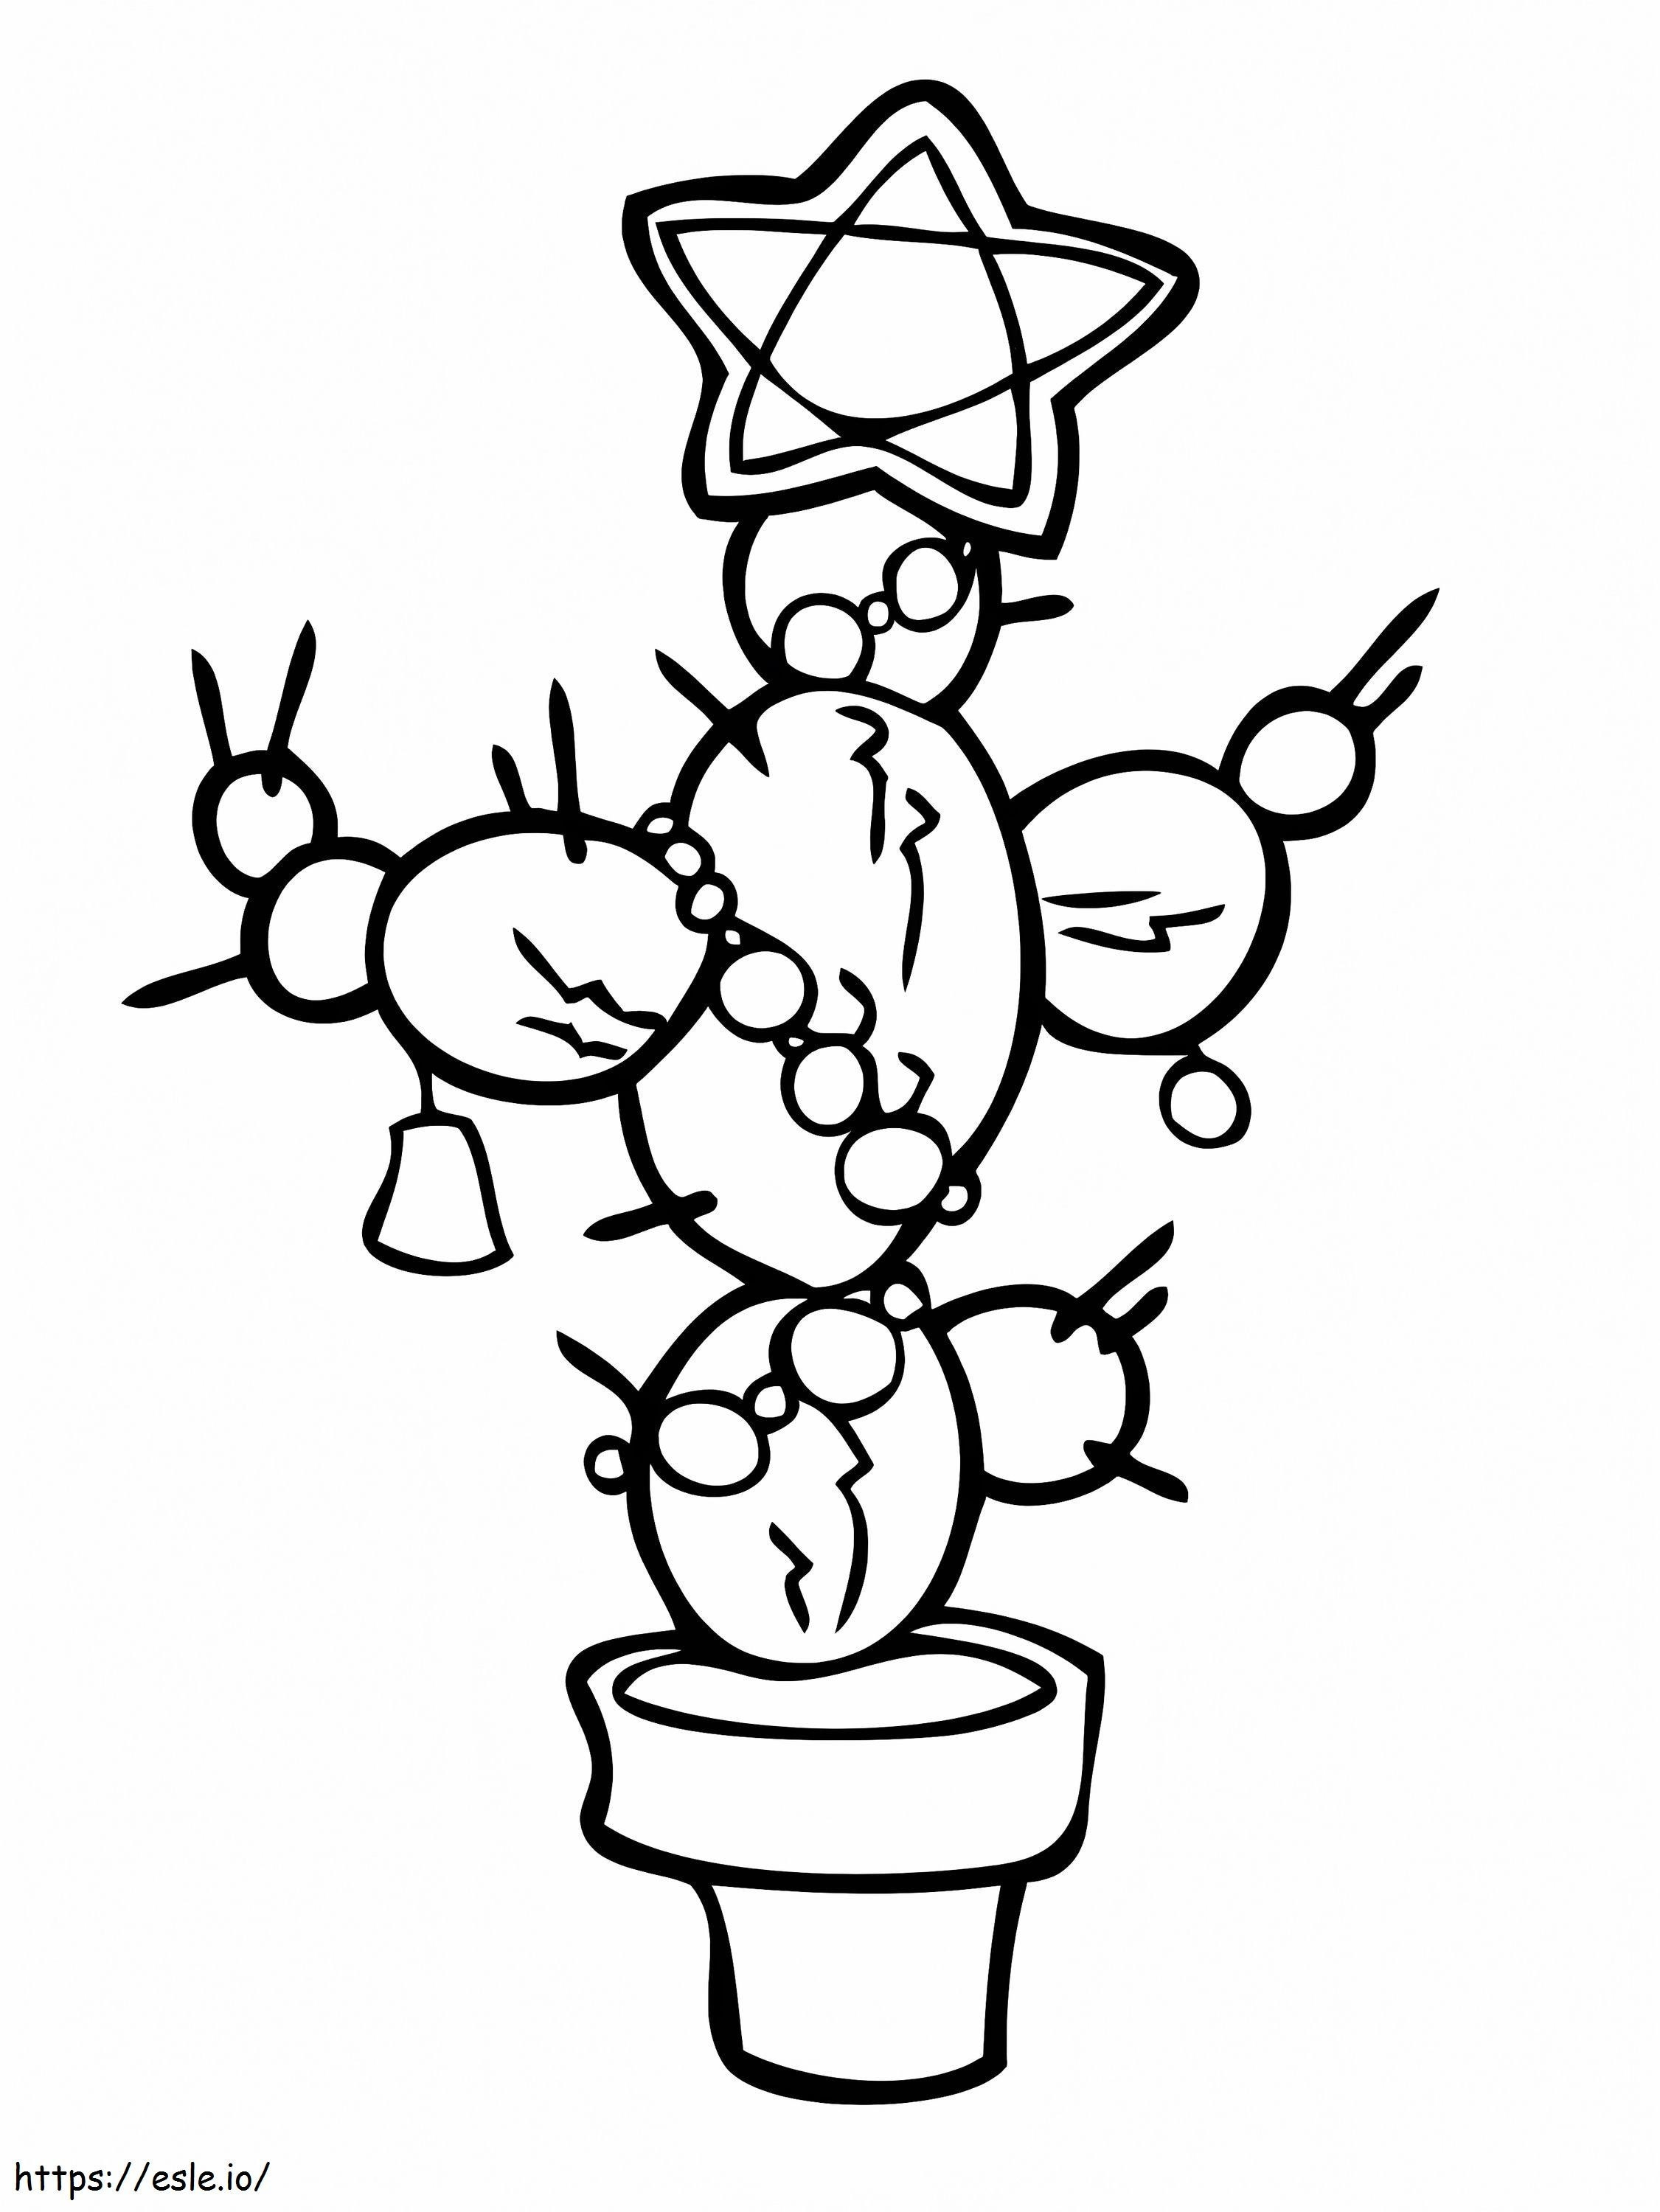 Kaktus im Blumentopf ausmalbilder